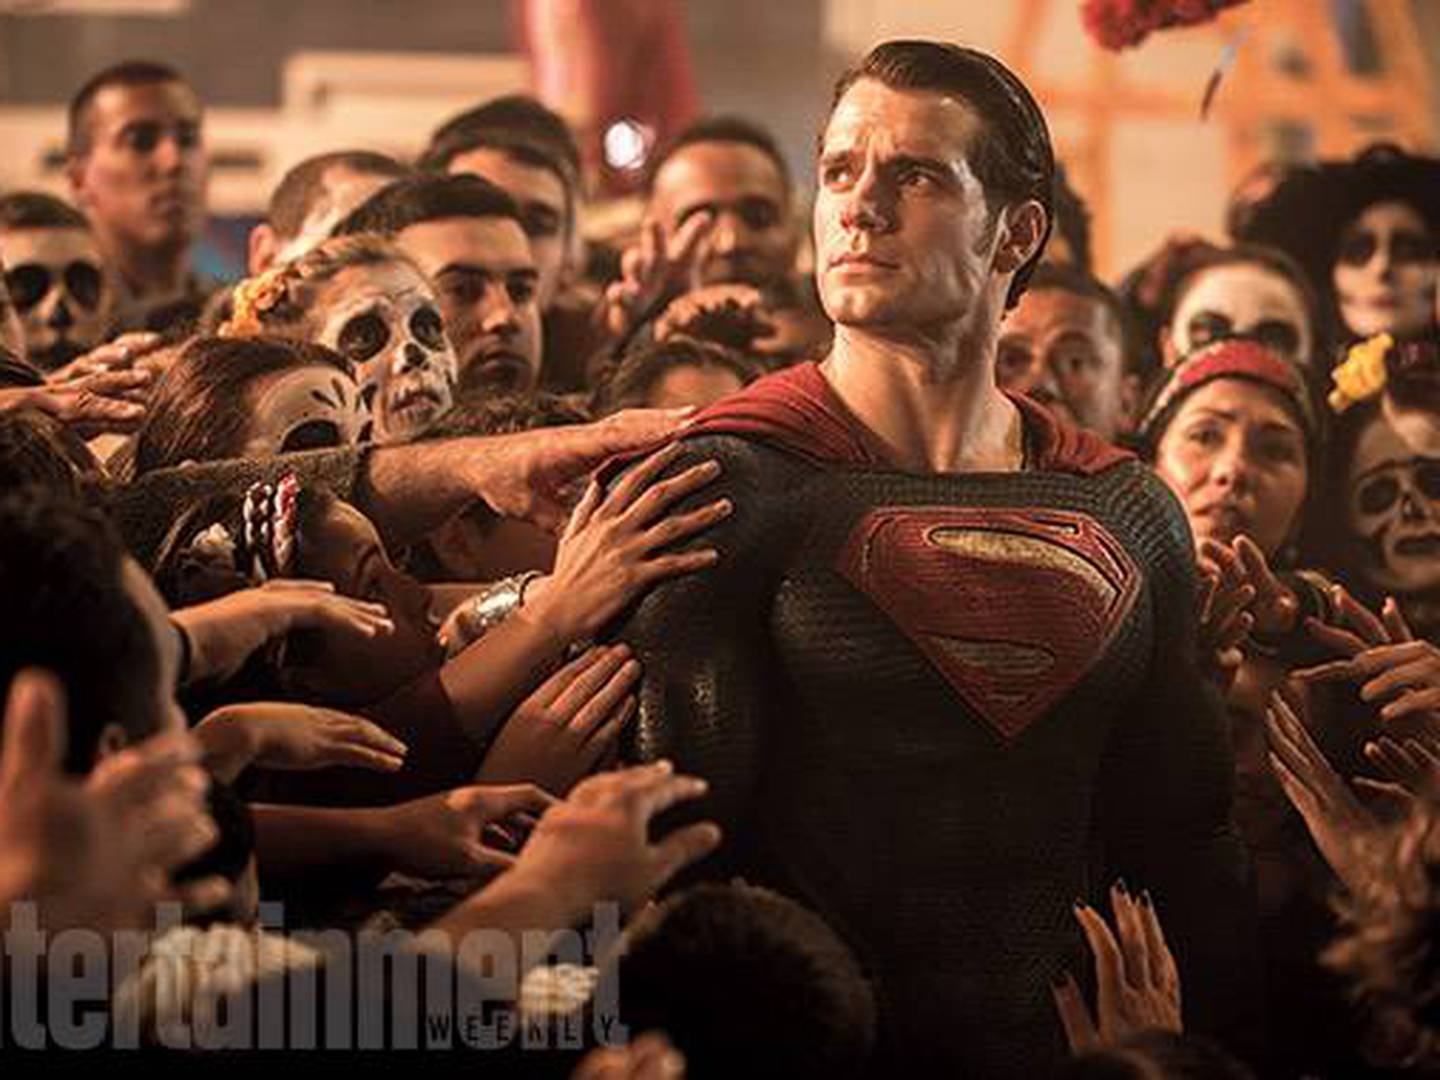 Henry Cavill ainda será Superman? Ator revela por que quer TANTO